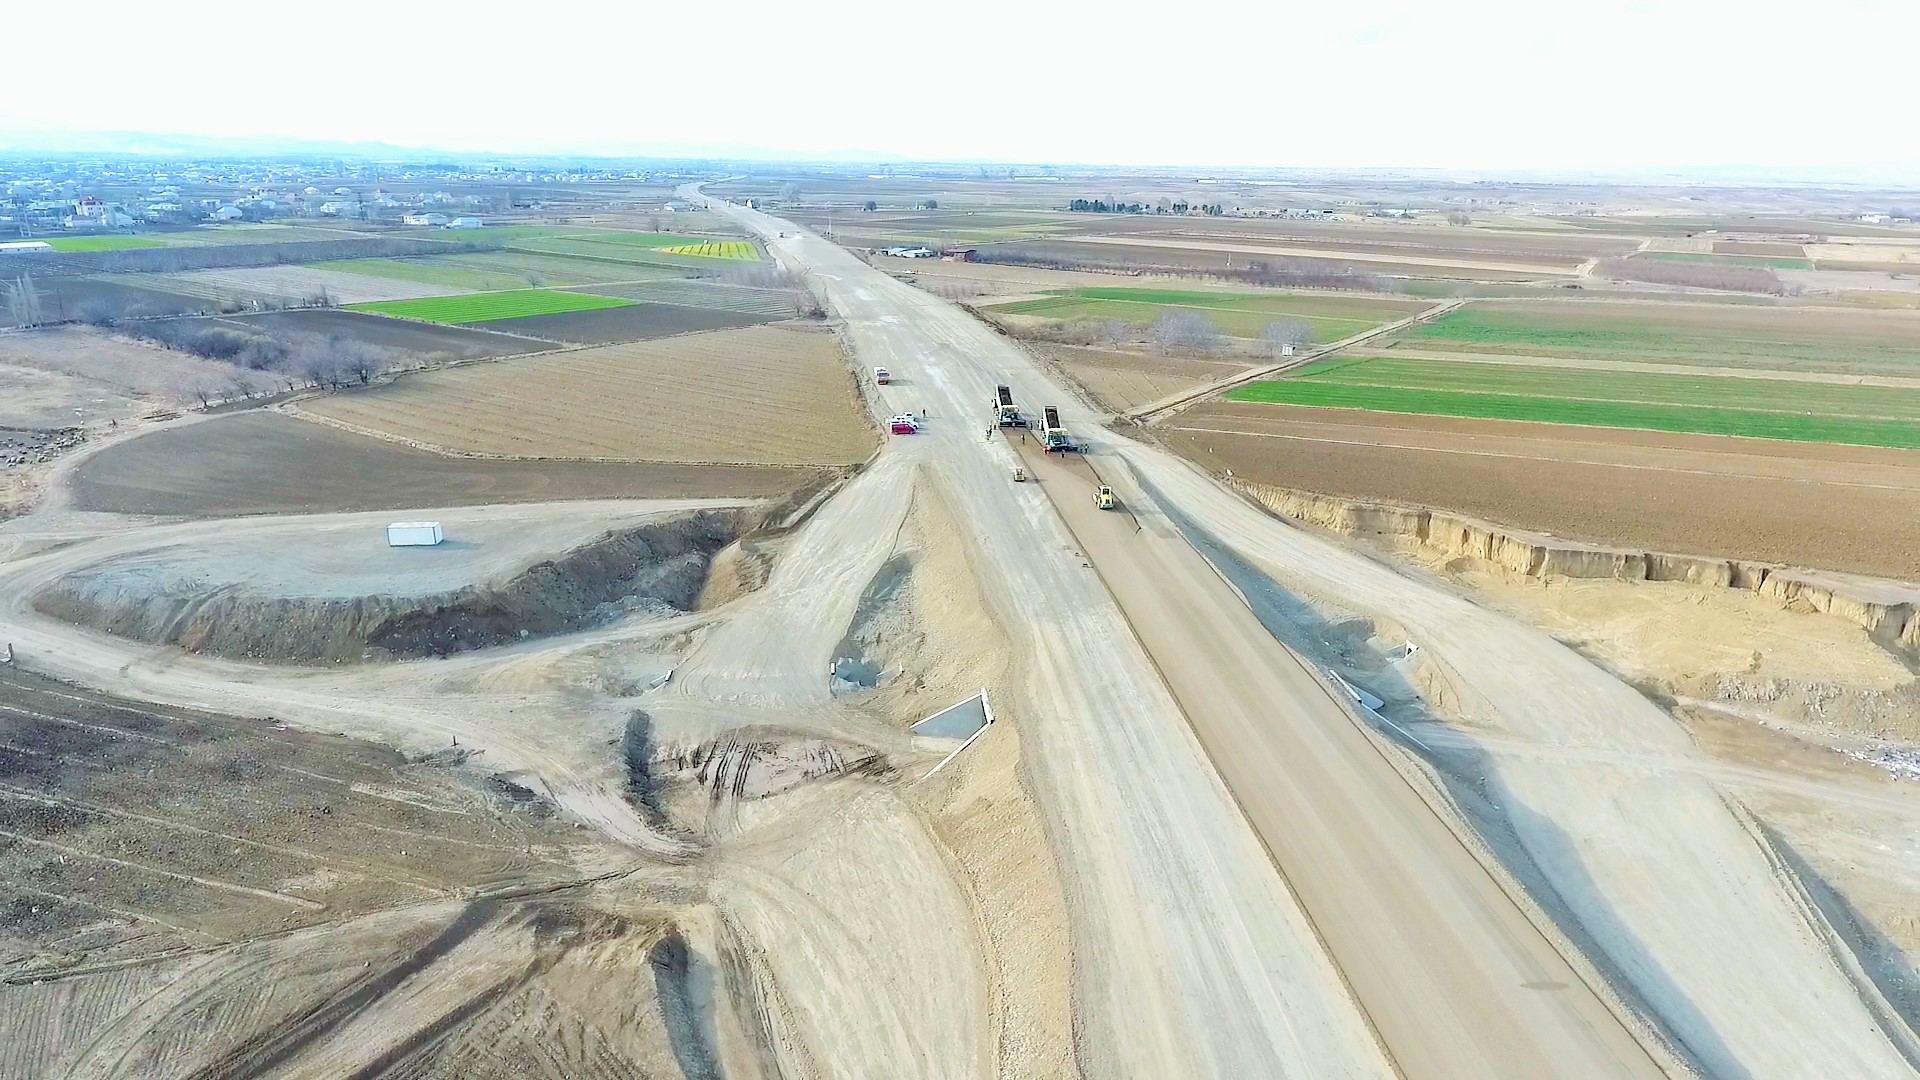 Усовершенствован один из участков автомагистрали Баку - граница с Грузией (ФОТО)